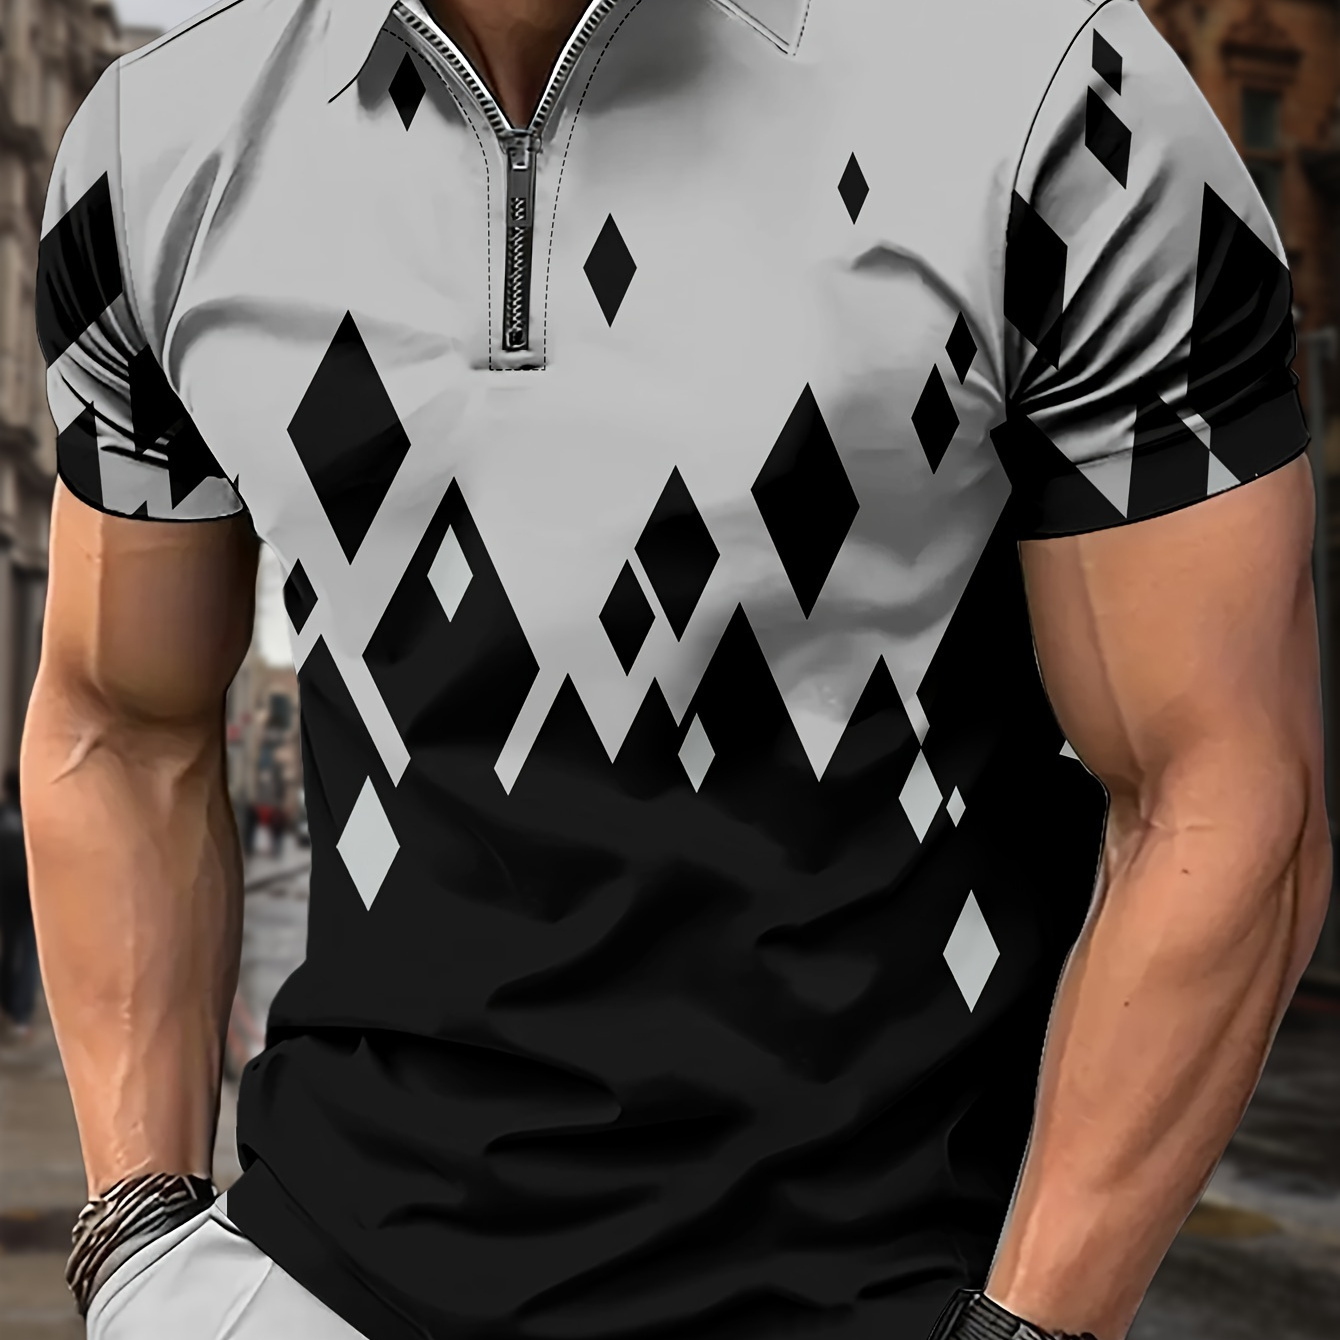 

Men's Zipper Golf Shirt, Graphic Print Short Sleeve Breathable Tennis Shirt, Moisture Wicking